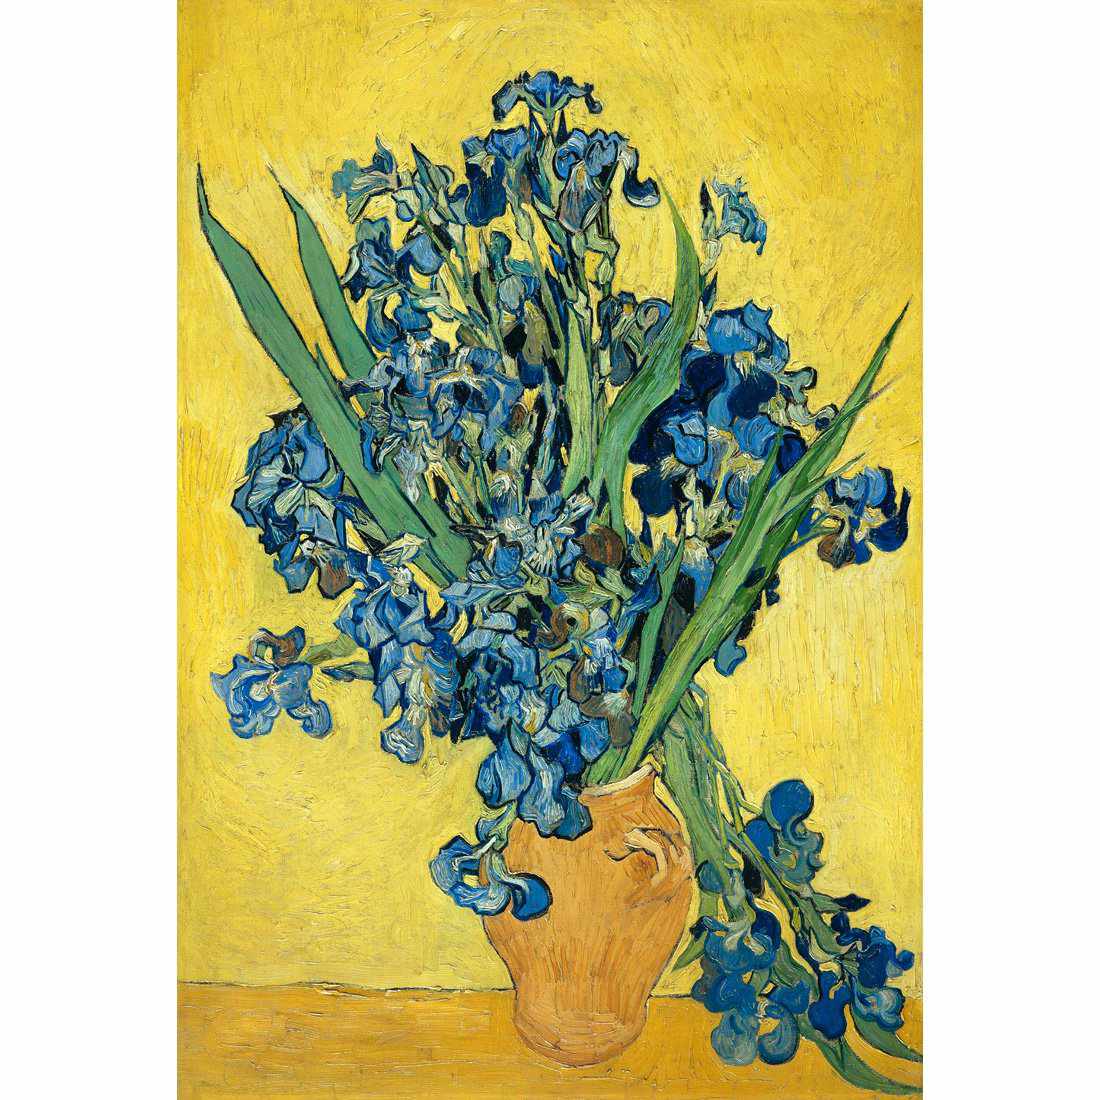 Vase Of Irises - Van Gogh Canvas Art-Canvas-Wall Art Designs-45x30cm-Canvas - No Frame-Wall Art Designs